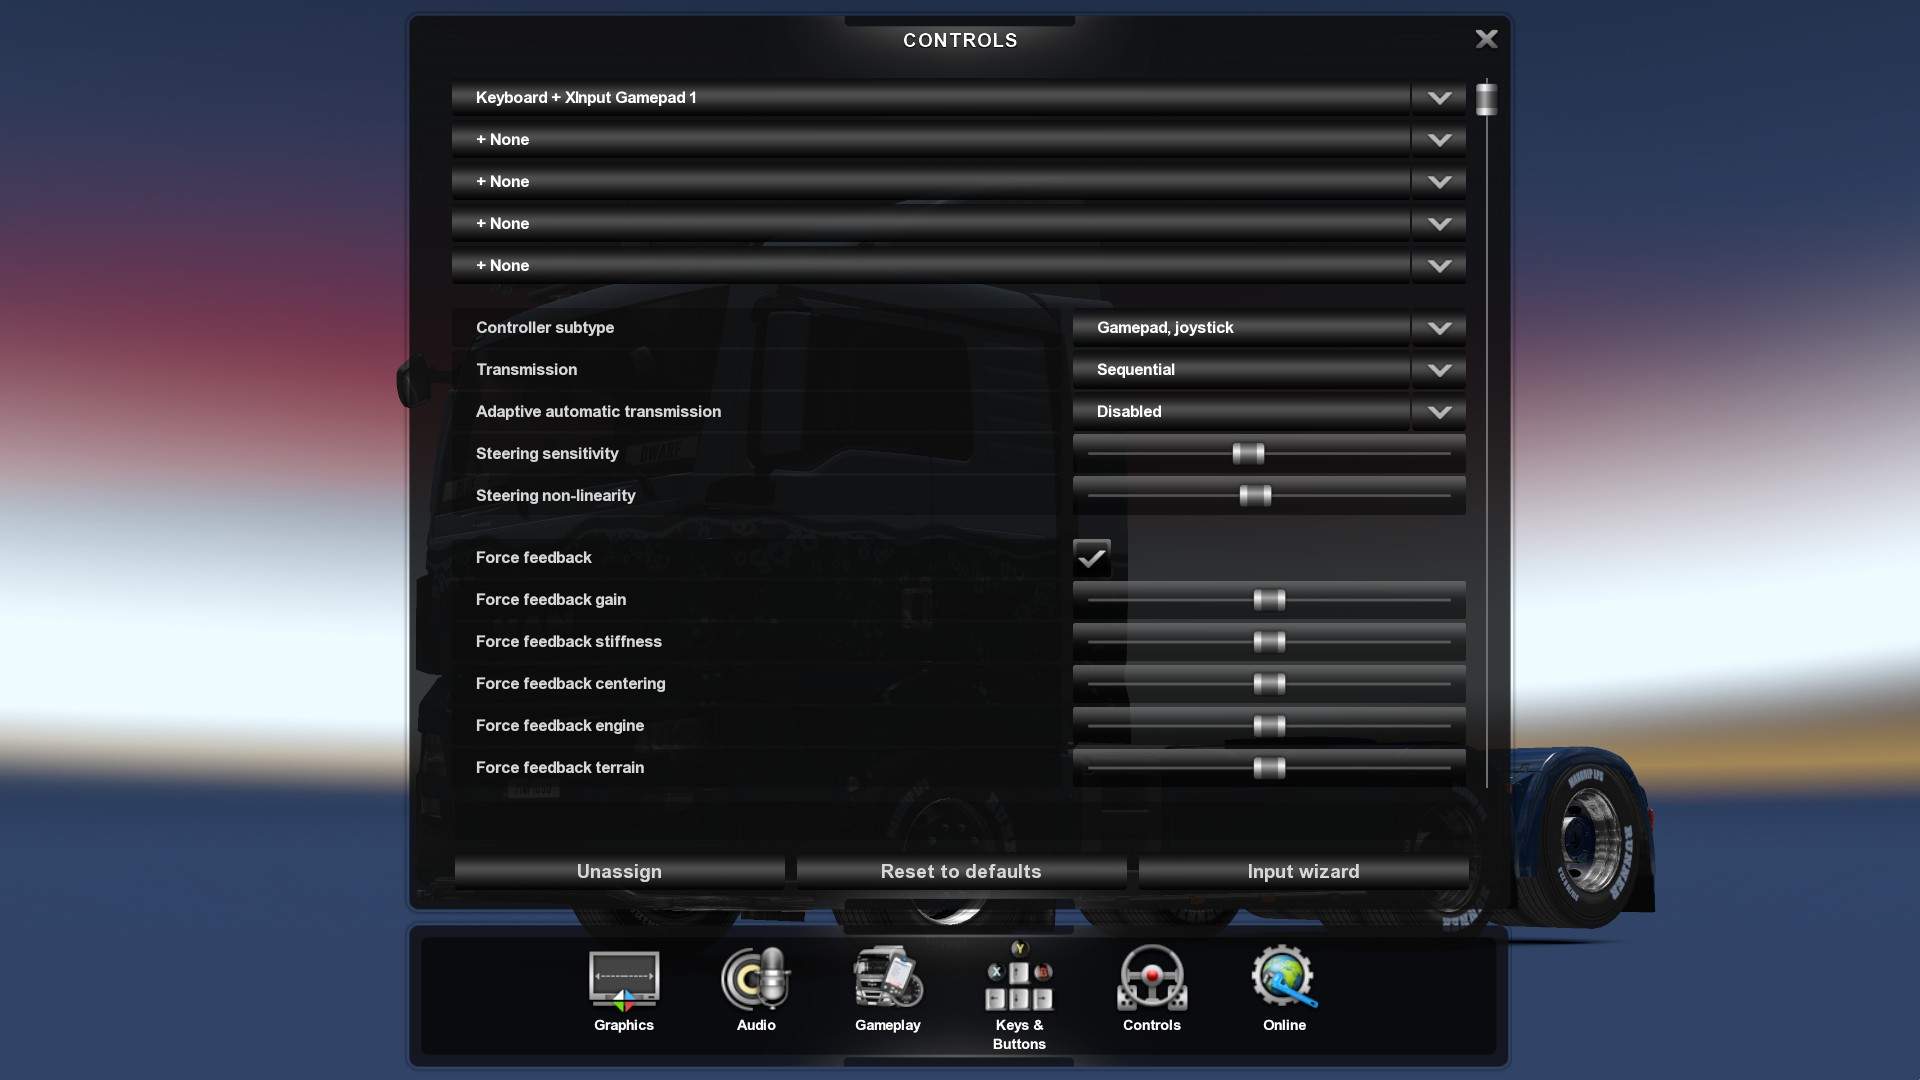 euro truck simulator 2 1.34 product key